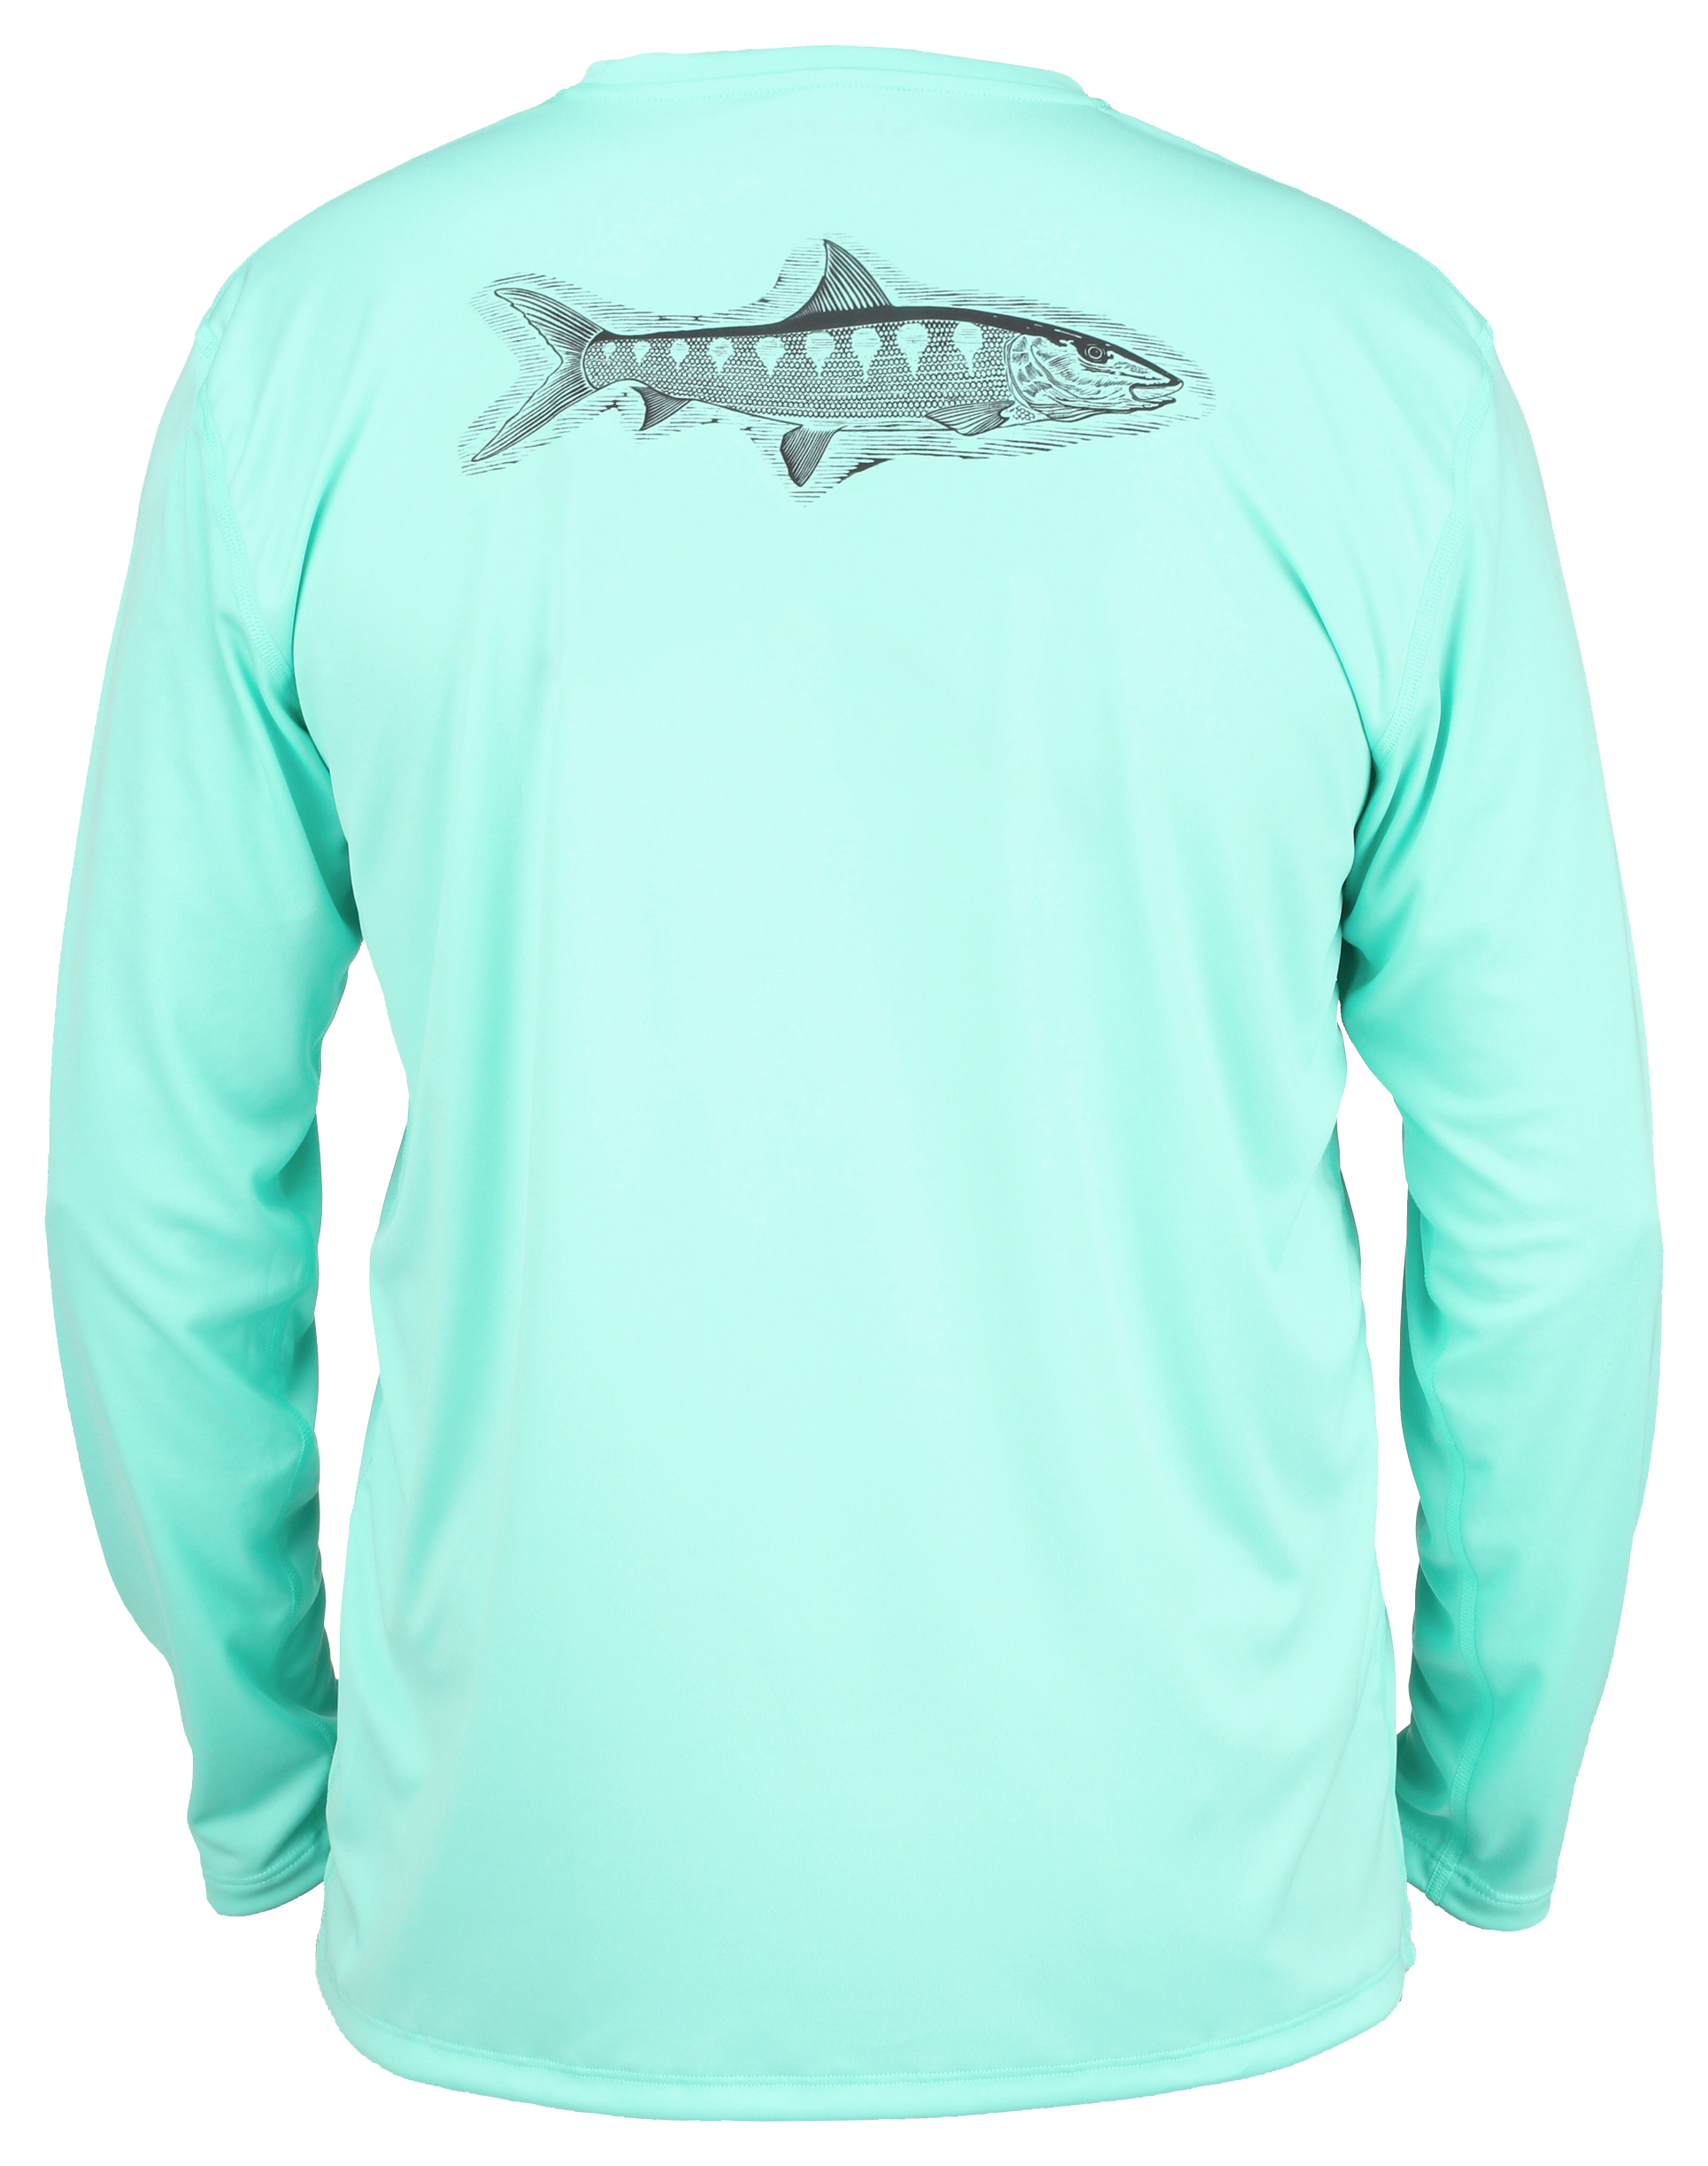 Simms Solar Tech Ocean Collection Bonefish Long-Sleeve T-Shirt for Men